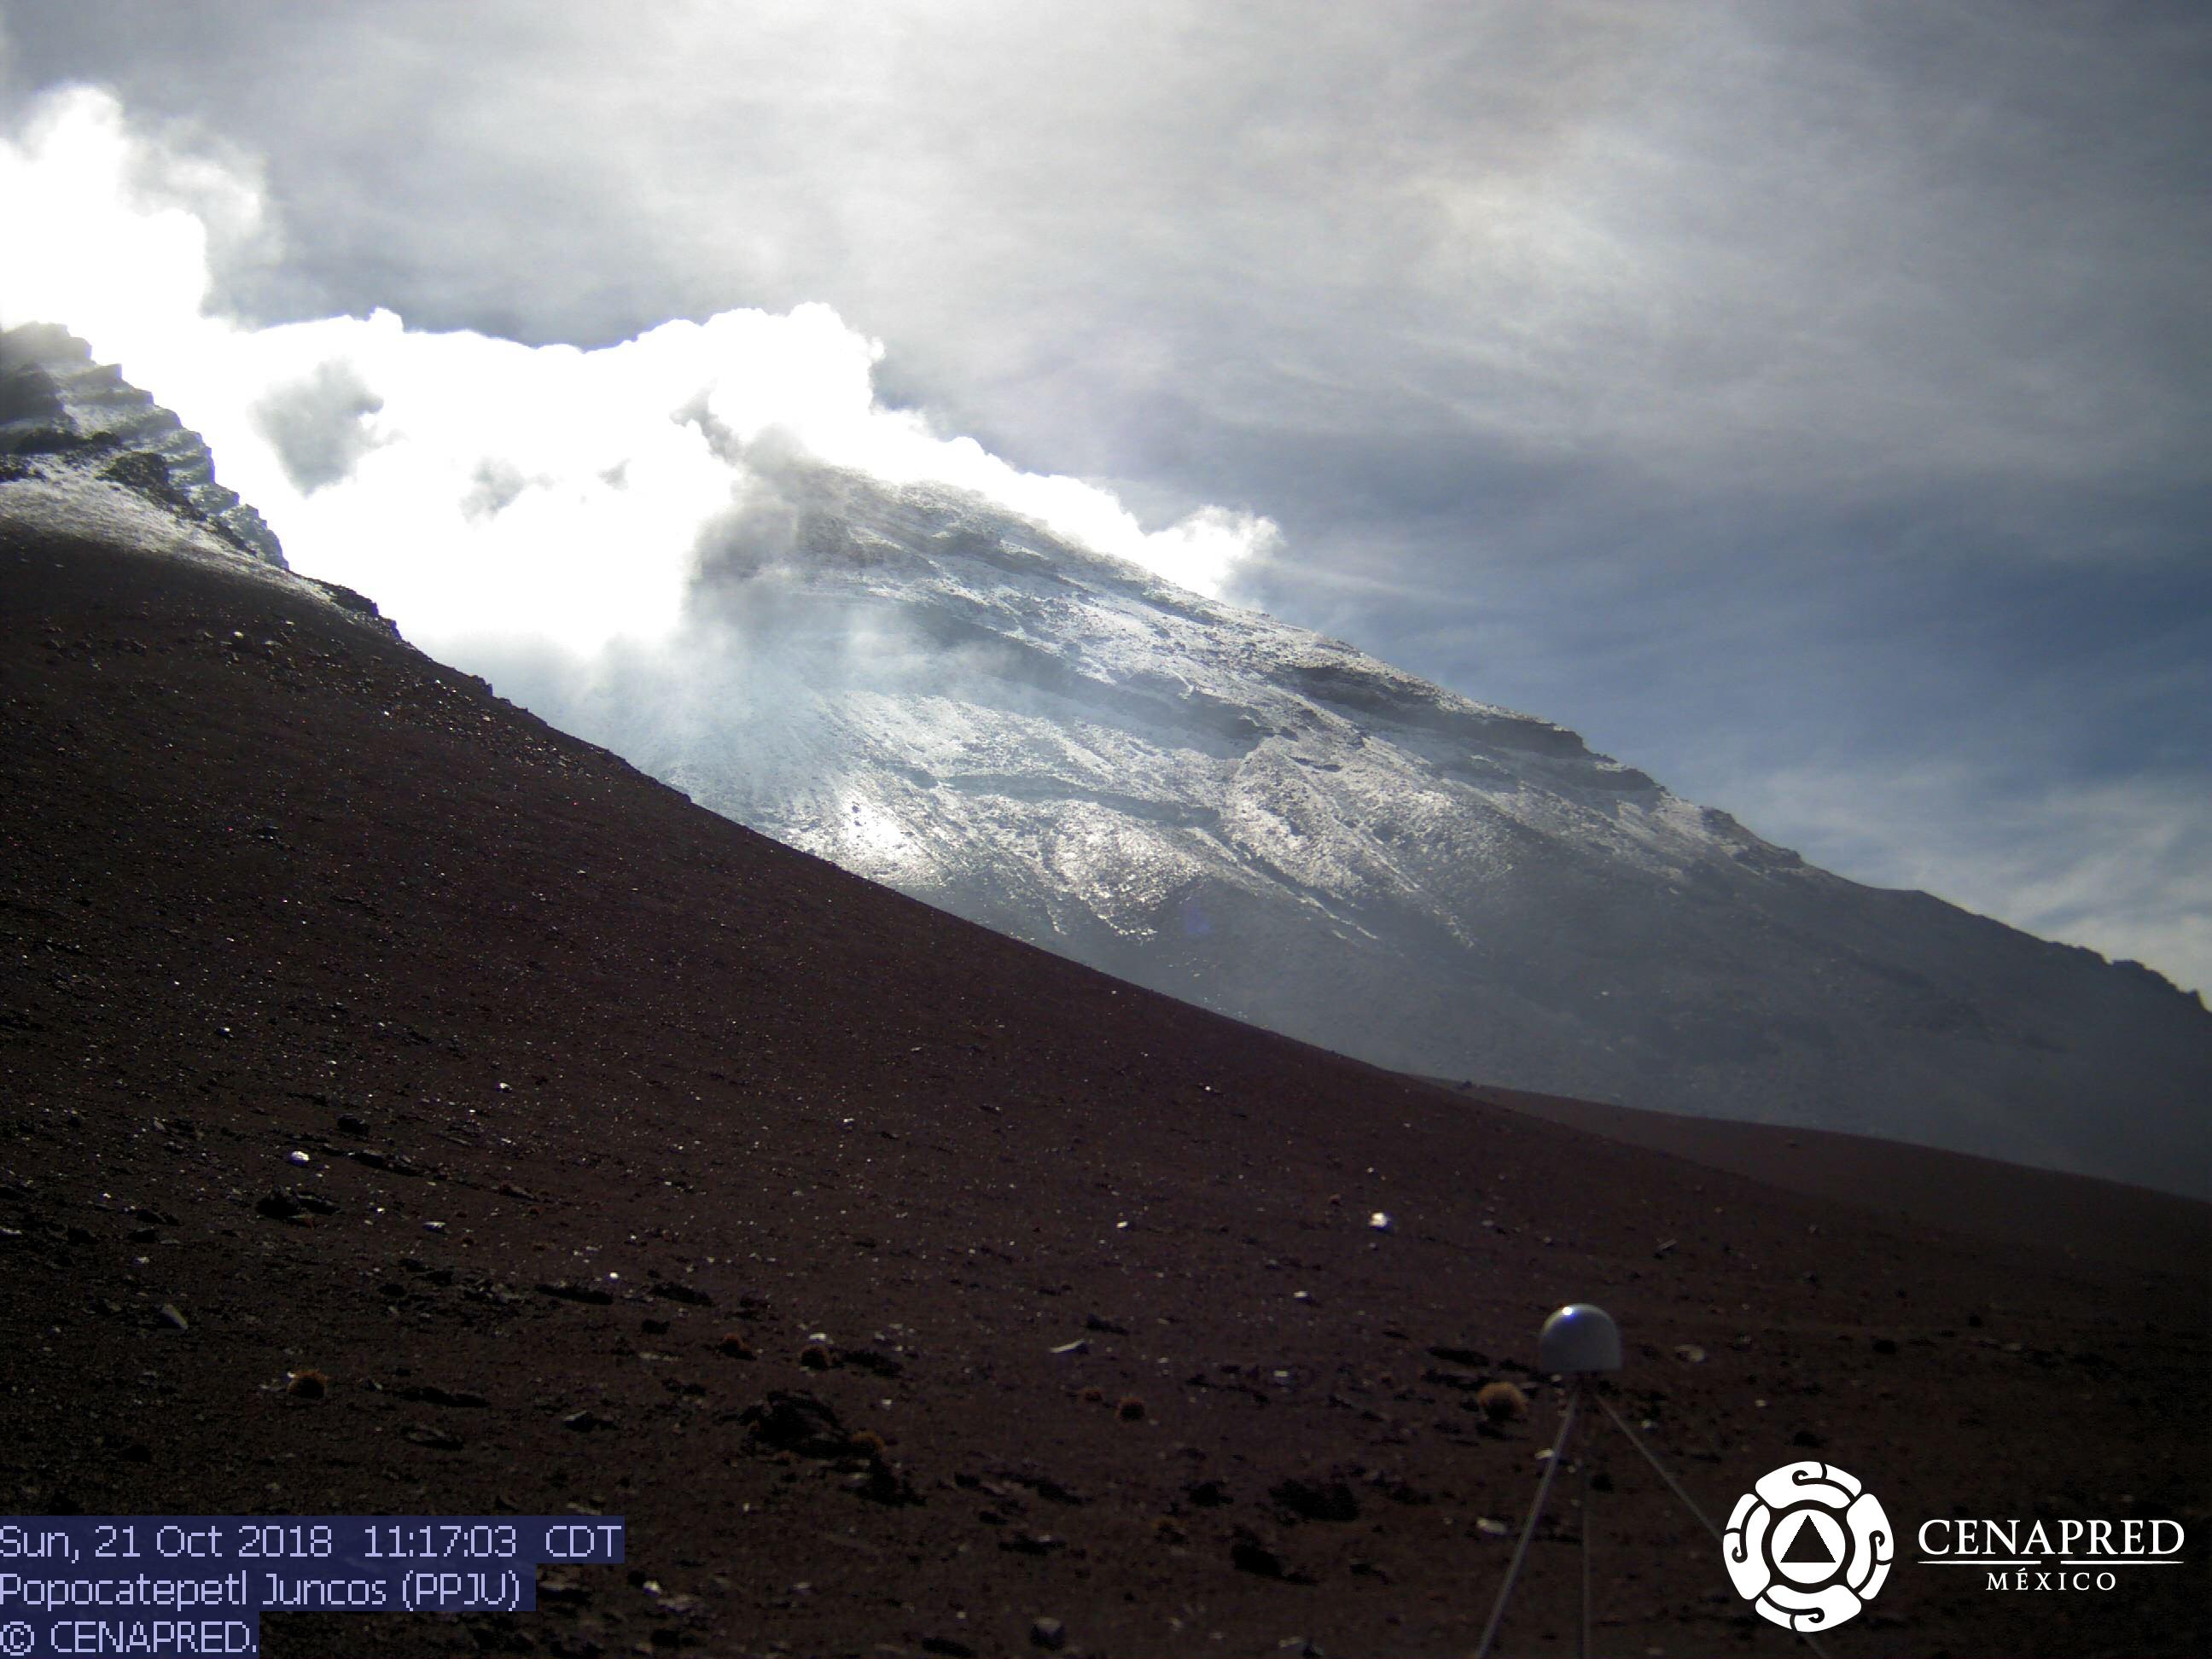 En las últimas 24 horas, por medio de los sistemas de monitoreo del volcán Popocatépetl, se identificaron 36 exhalaciones, acompañadas de vapor de agua y gas. Adicionalmente, el día de ayer se registraron tres eventos de tipo VT